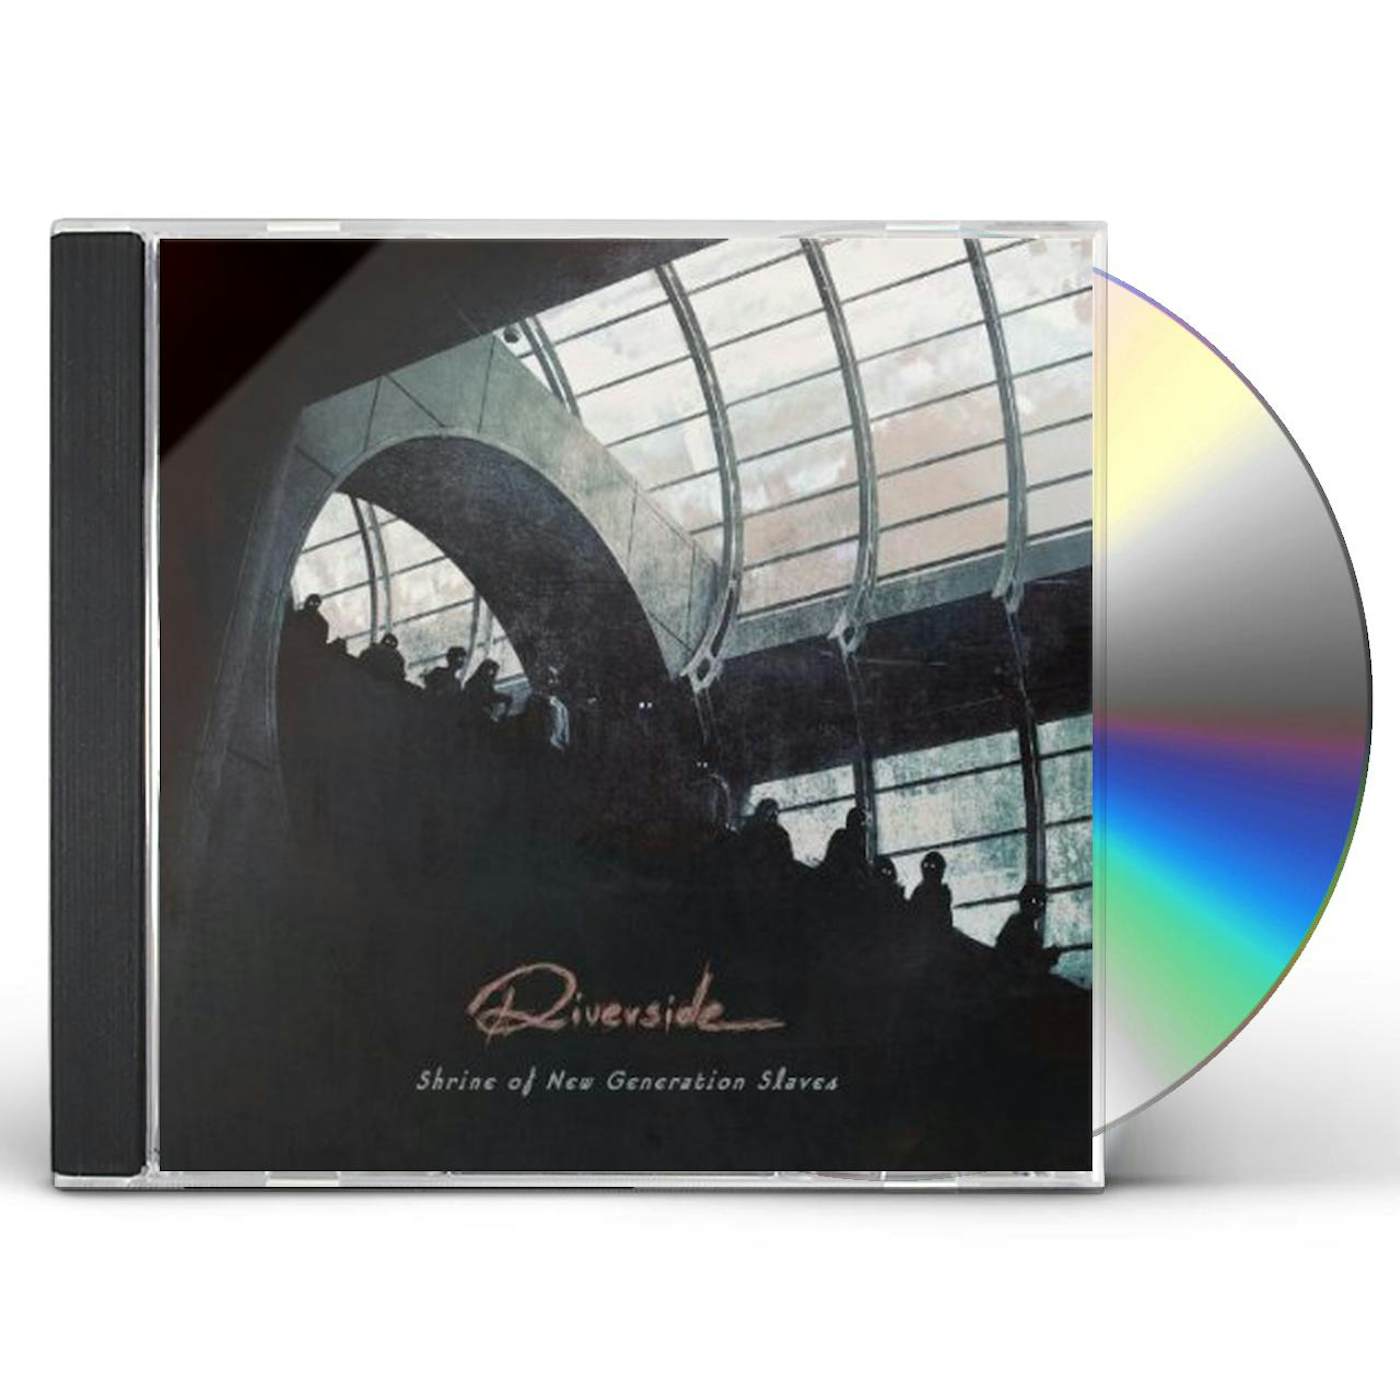 Riverside SHRINE OF NEW GENERATION SLAVES CD